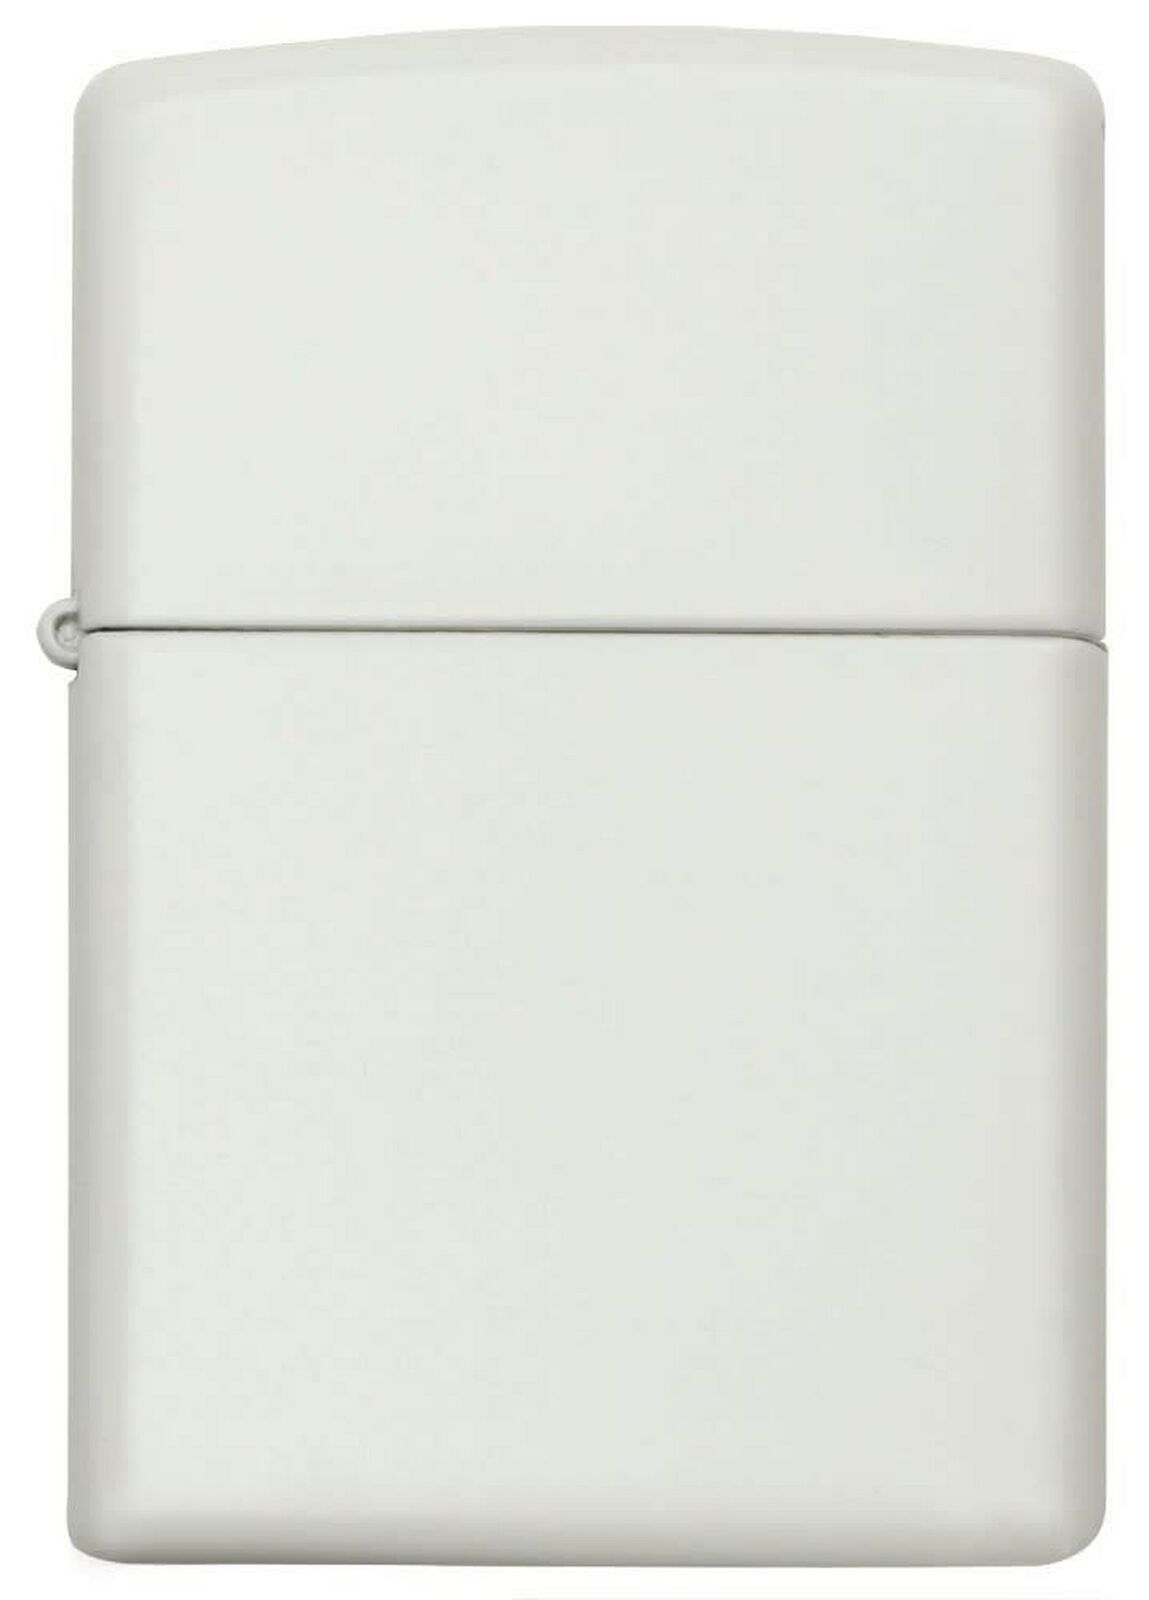 Zippo Pocket Lighter, White Matte (214)